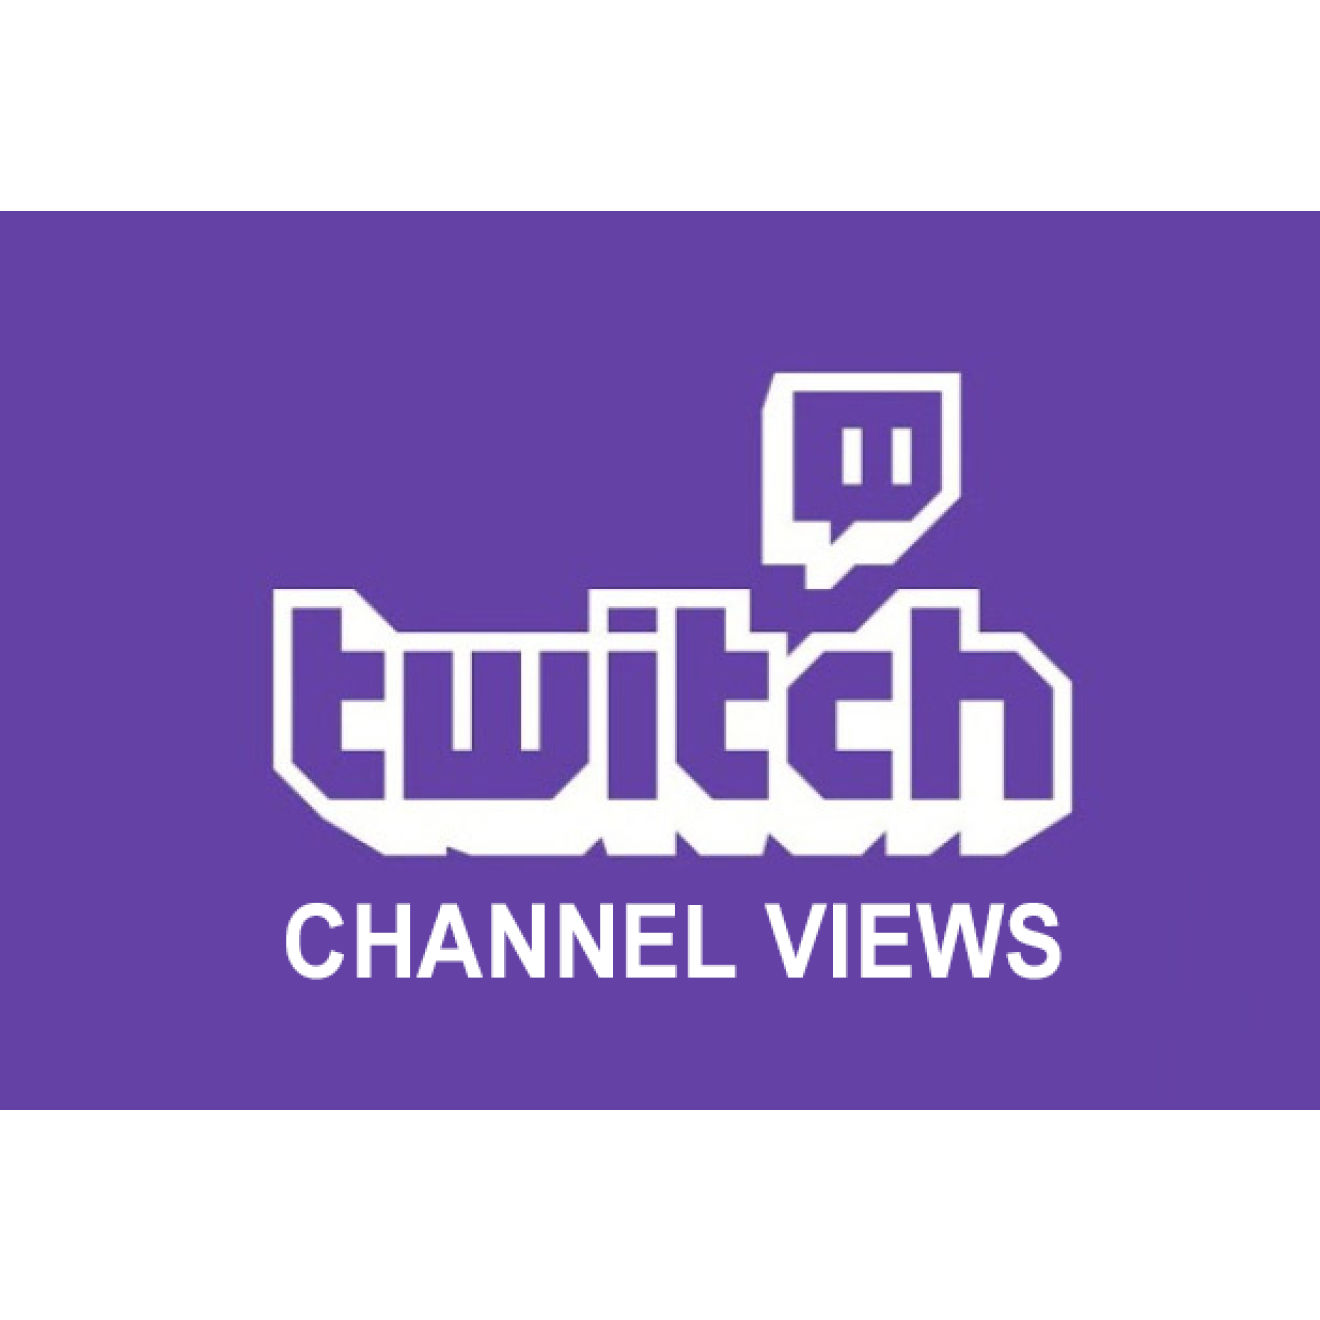 500 Twitch Channel Views / Aufrufe für Dich